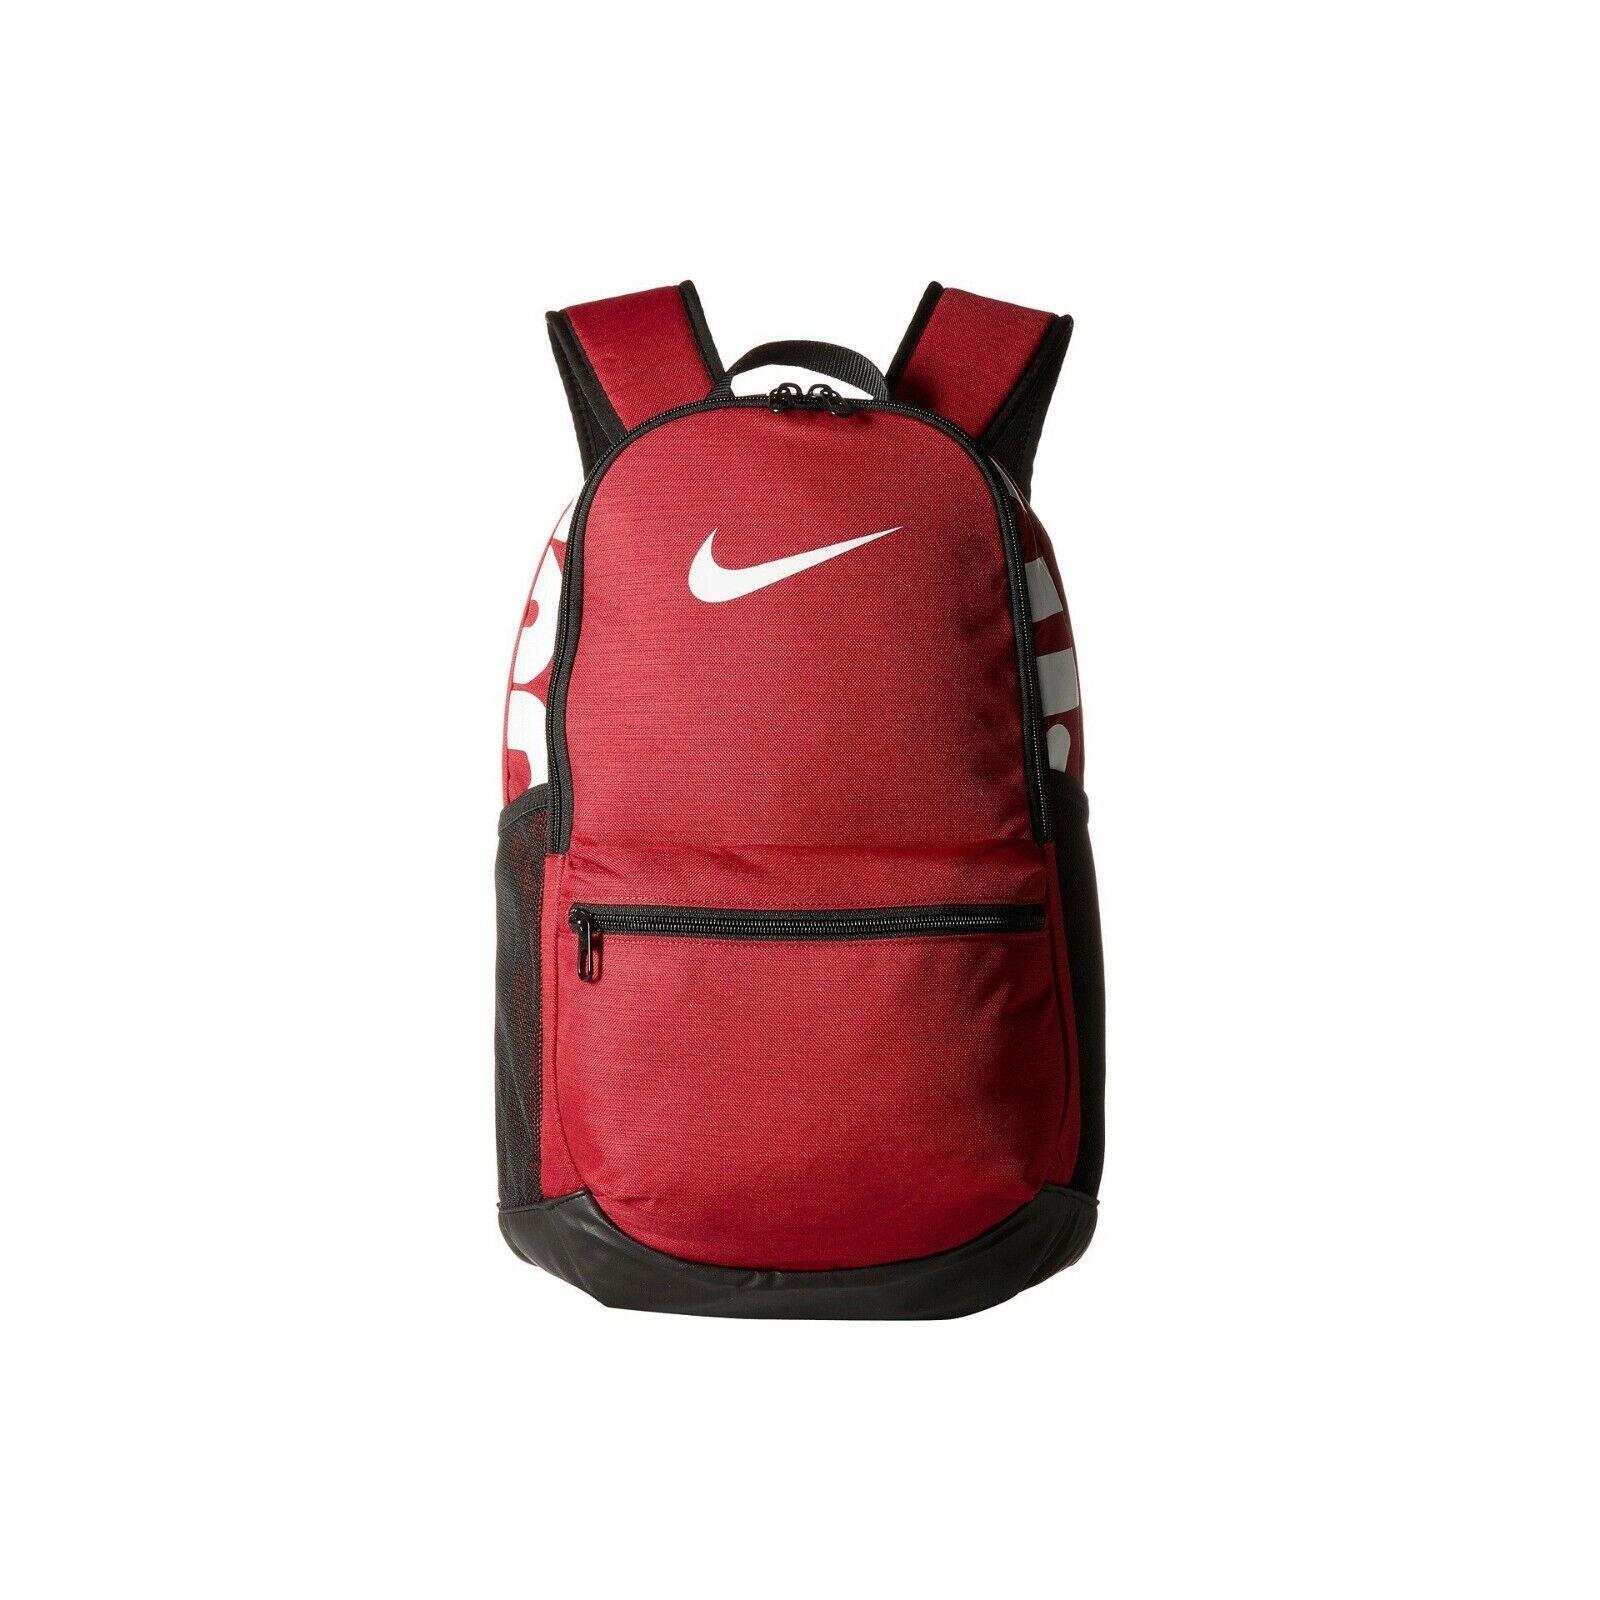 Nike Brasilia Medium Train Backpack BA5329 618 Red Crush/white/black 1465 CU IN